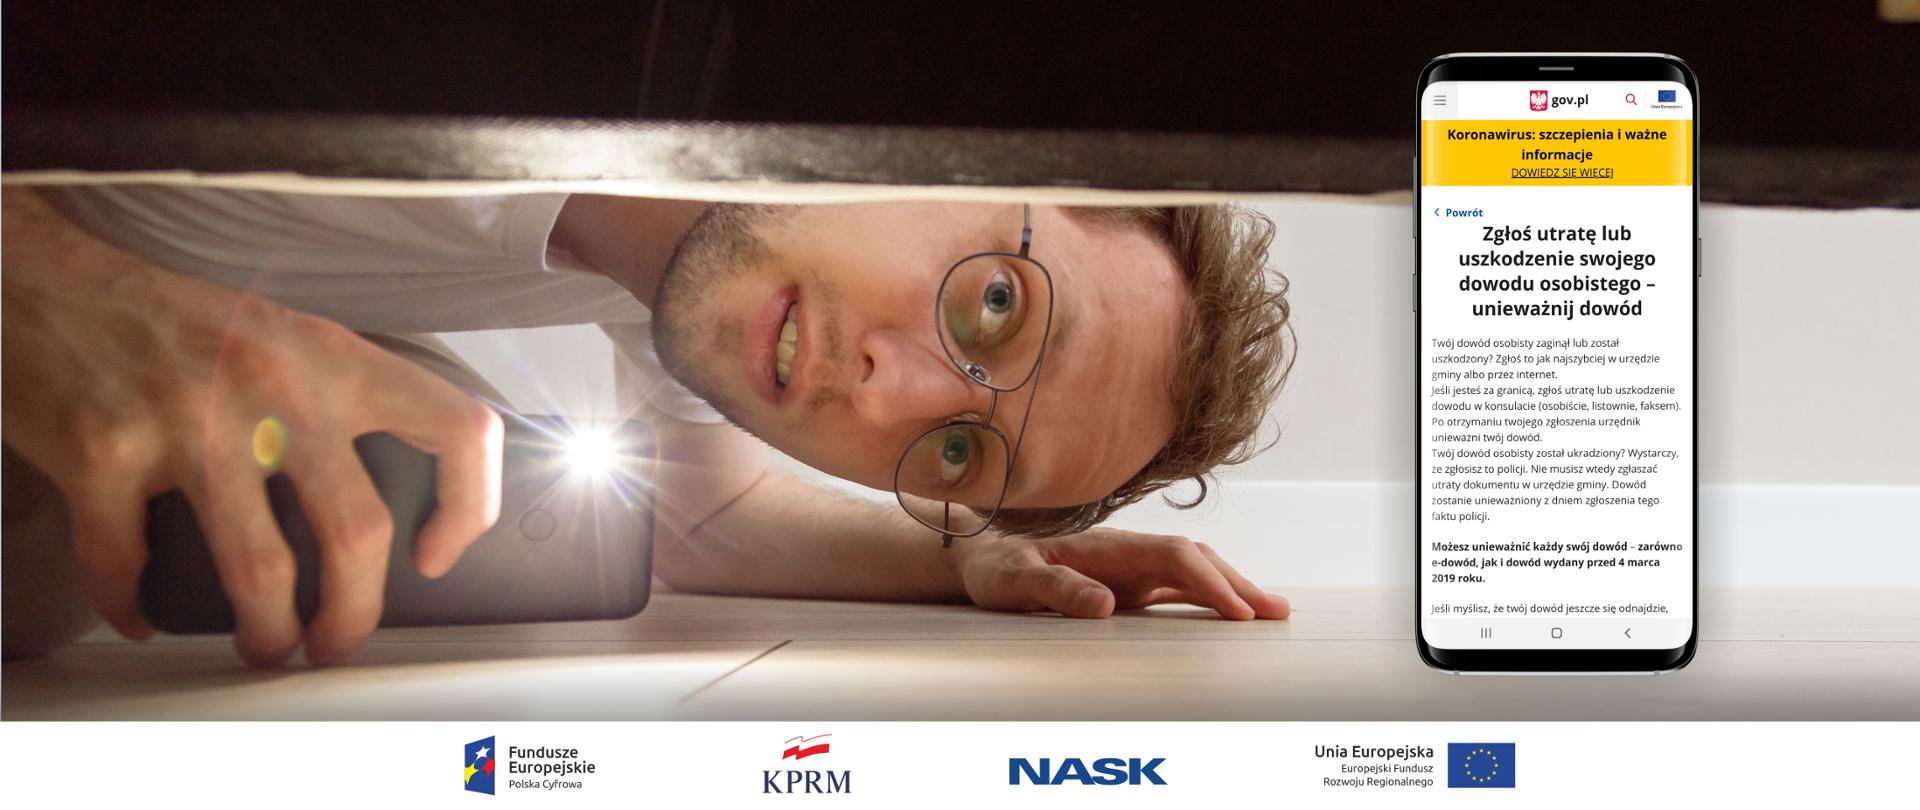 Zdjęcie mężczyzny w okularach, który szuka czegoś pod łóżkiem, świecąc latarka z telefonu. Po prawej stronie powiększony smartfon, na którego ekranie widać otwartą stronę www z e-usługą – Zgłoś utratę lub uszkodzenie swojego dowodu osobistego – unieważnij dowód.